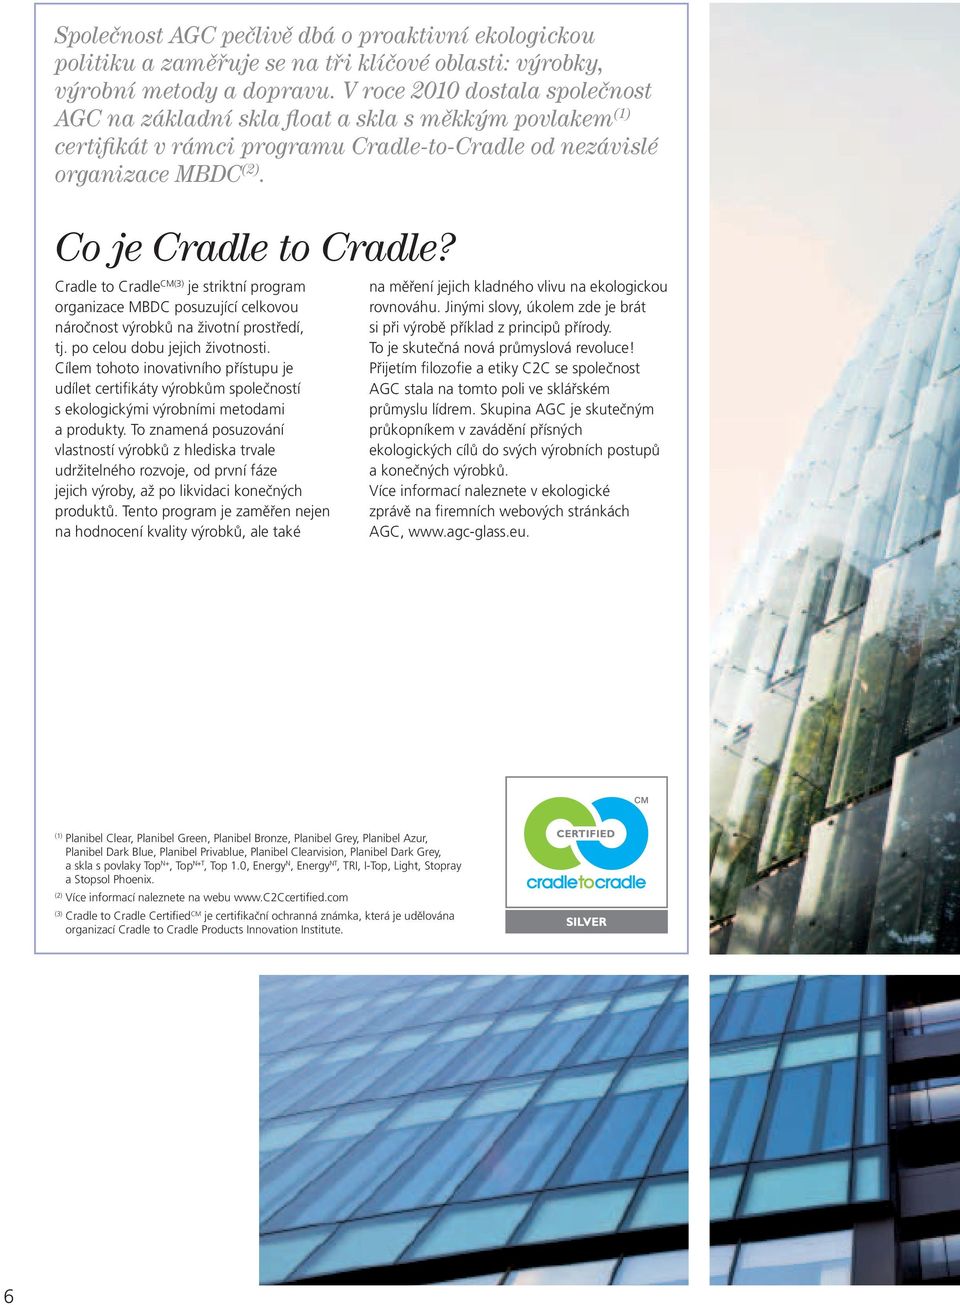 Cradle to Cradle CM(3) je striktní program organizace MBDC posuzující celkovou náročnost výrobků na životní prostředí, tj. po celou dobu jejich životnosti.